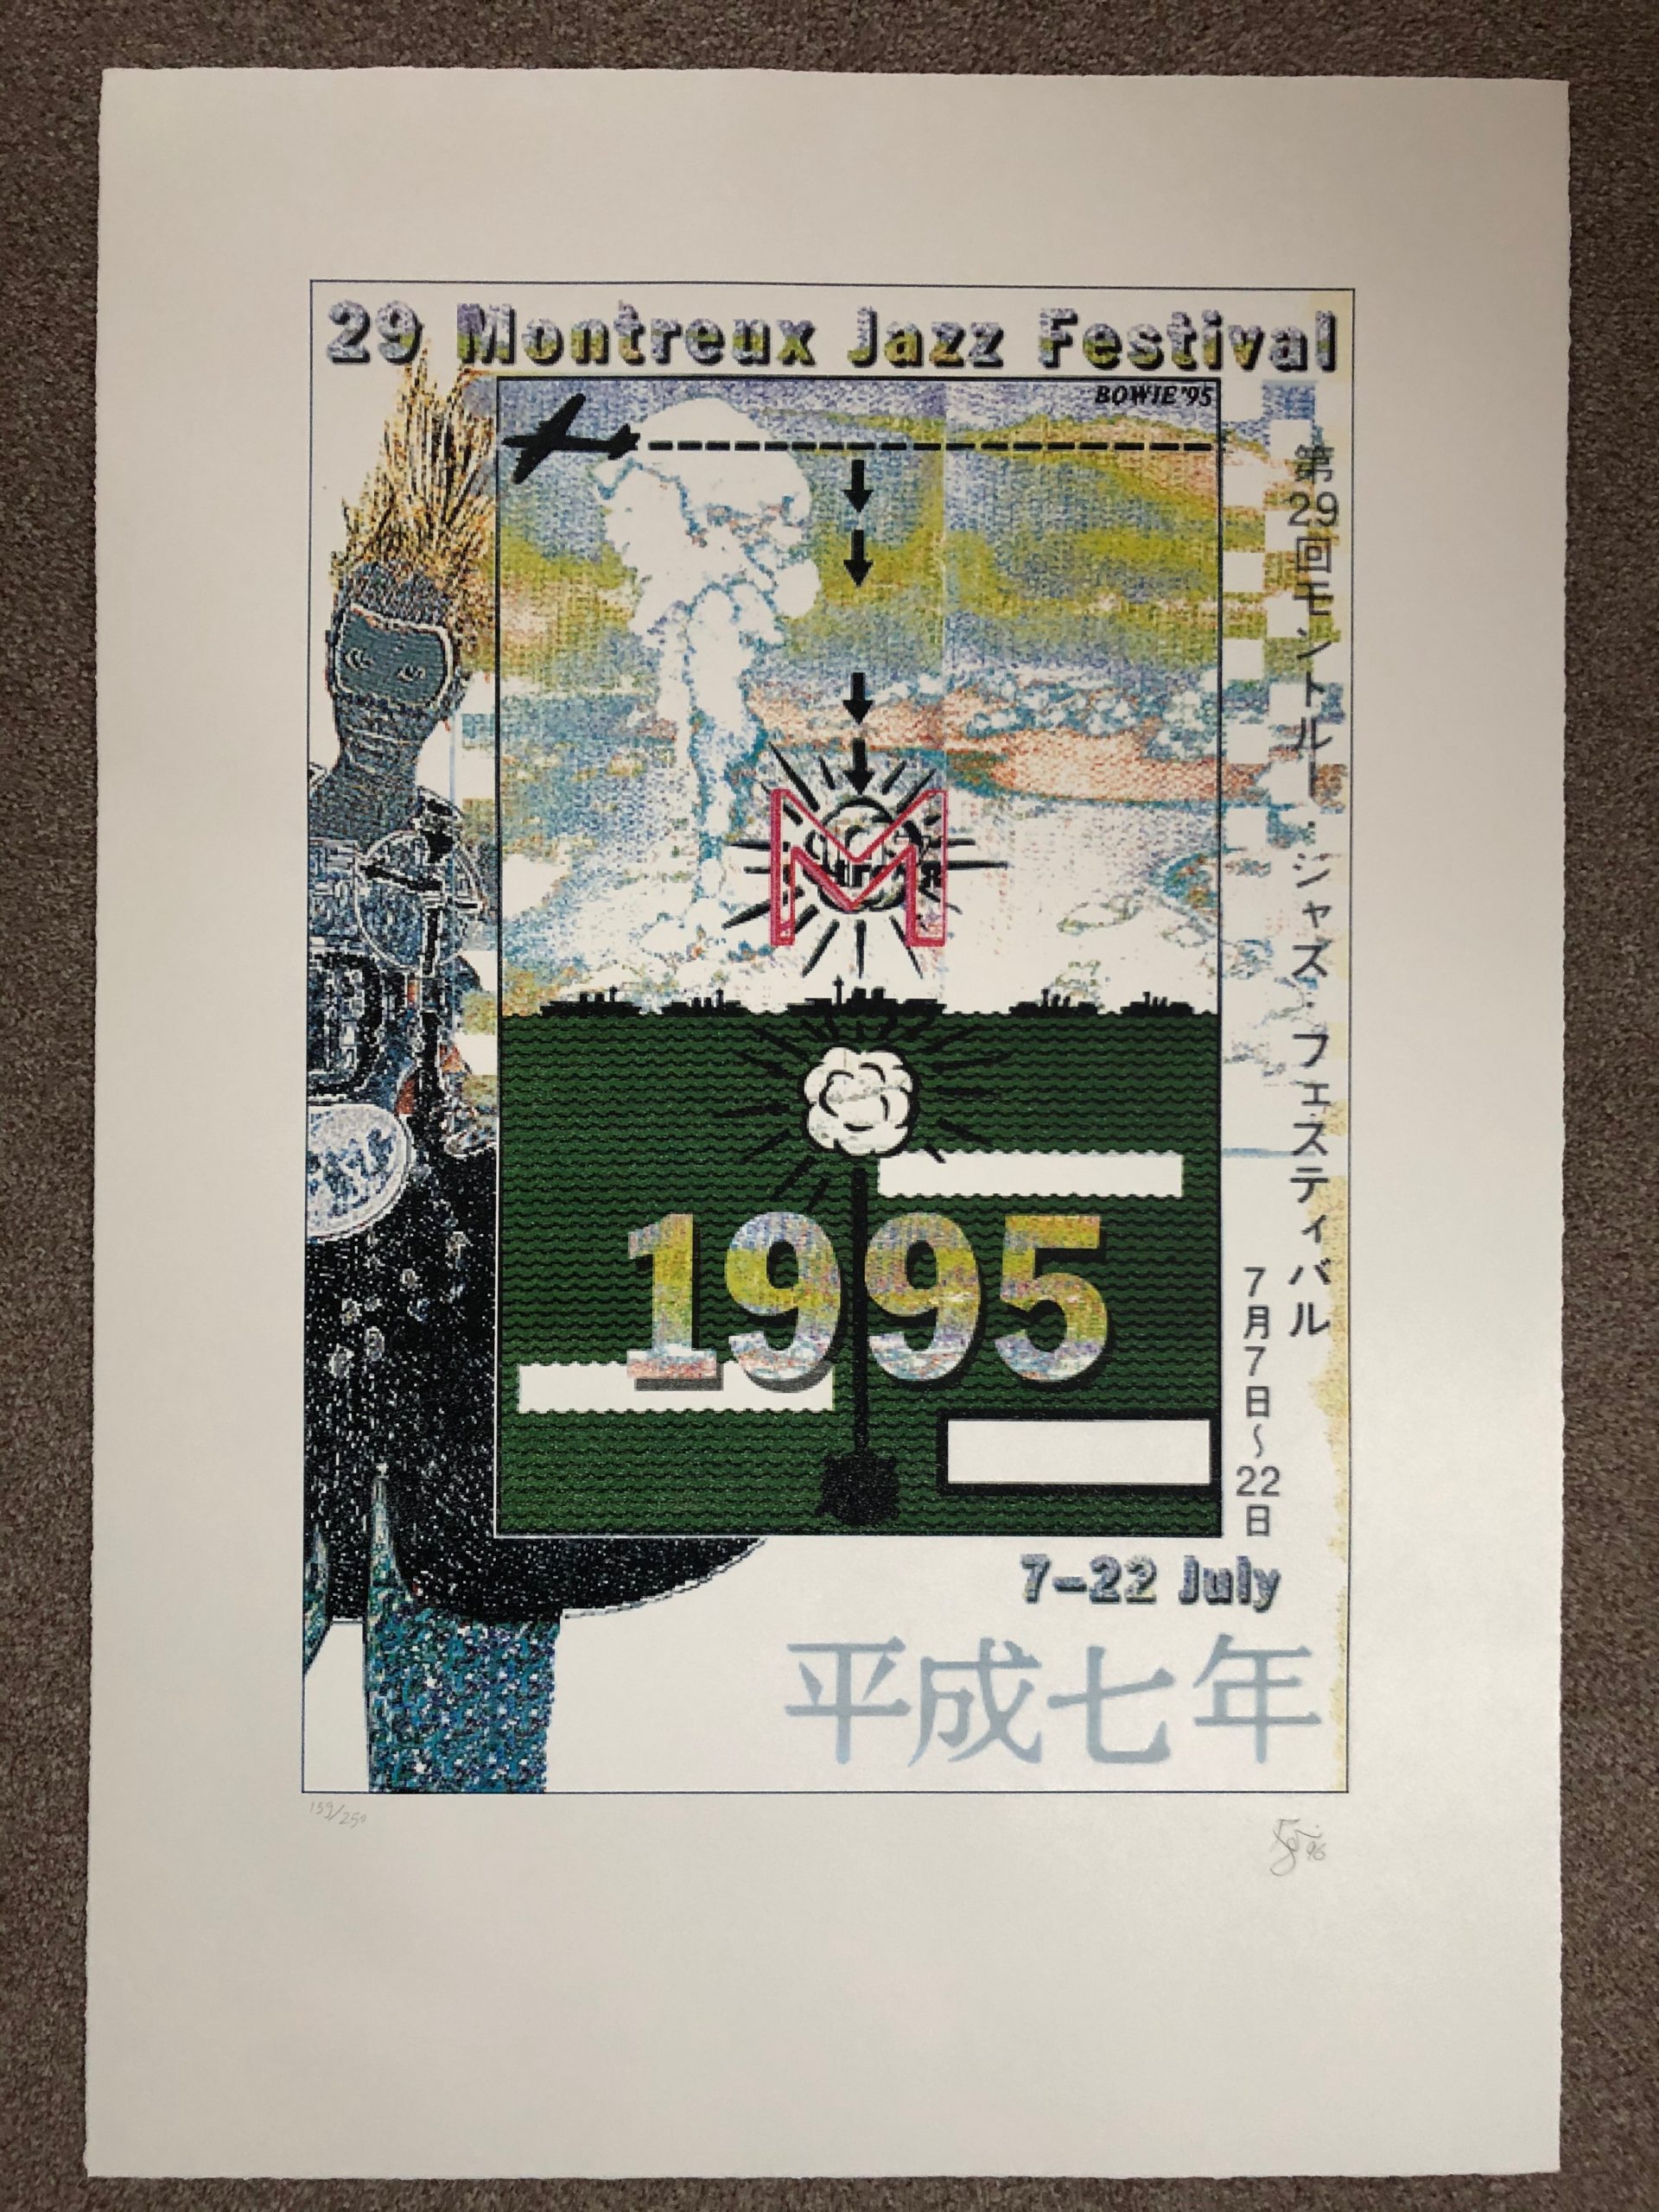 David bowie signed print montreux festival 1995